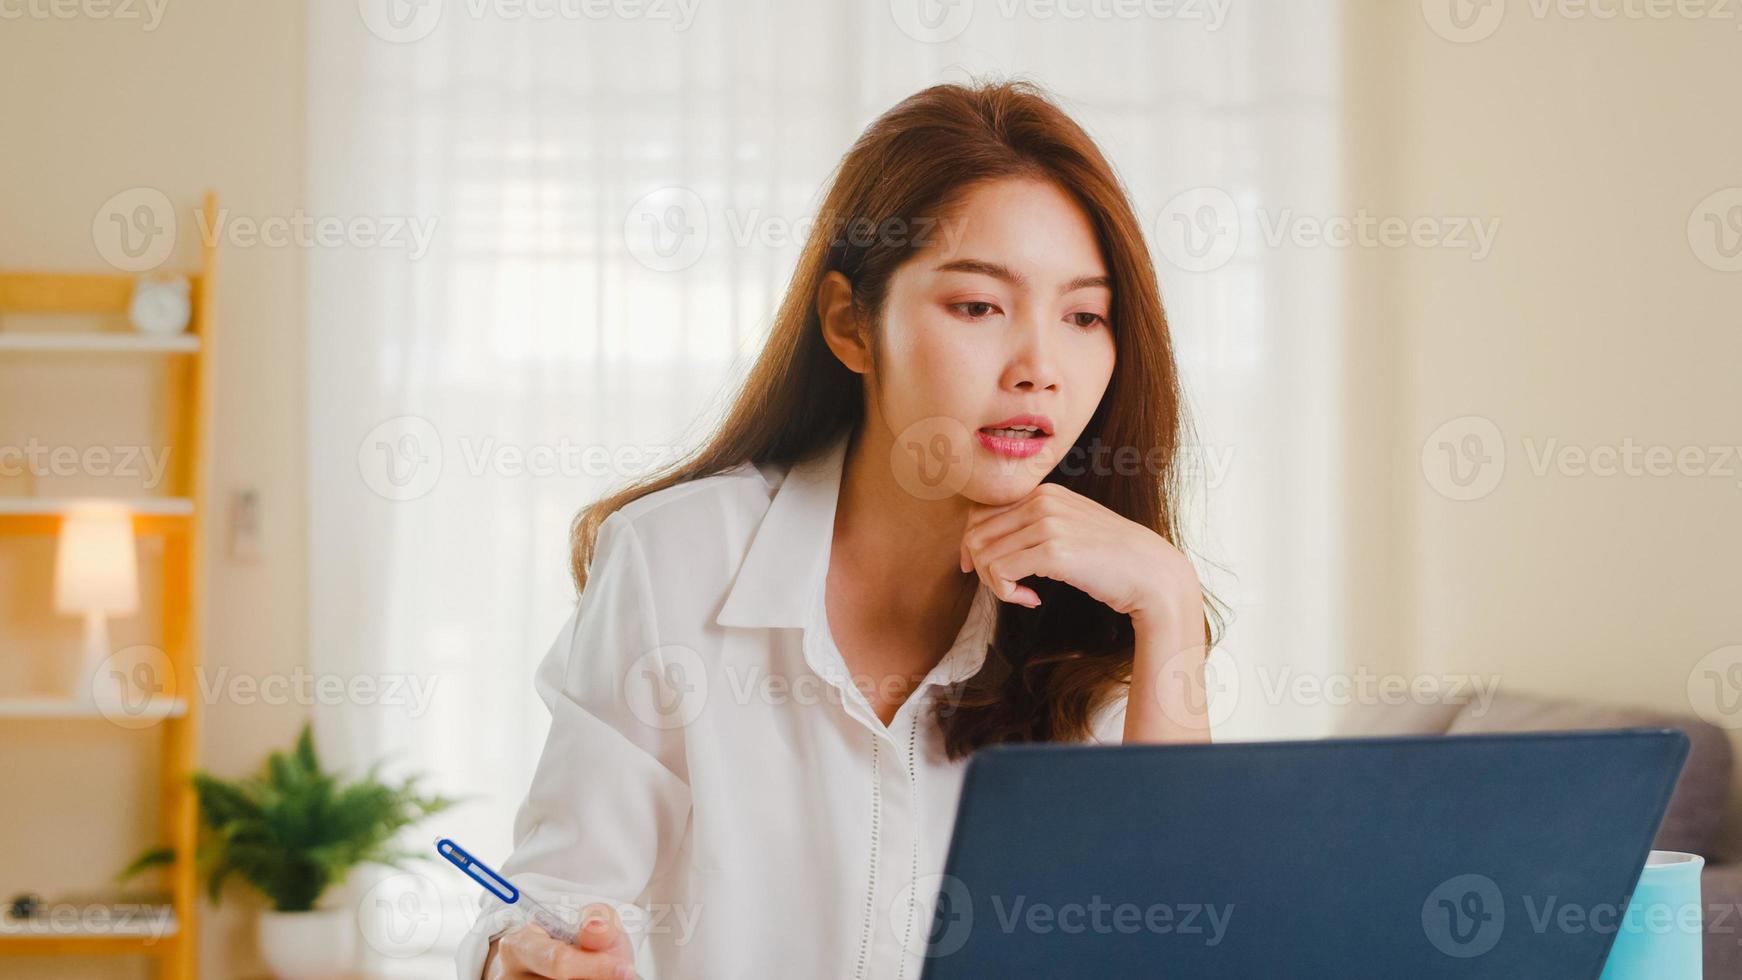 donna d'affari asiatica che utilizza laptop parla con i colleghi del piano in videochiamata mentre lavora in modo intelligente da casa in soggiorno. autoisolamento, distanziamento sociale, quarantena per la prevenzione del coronavirus. foto